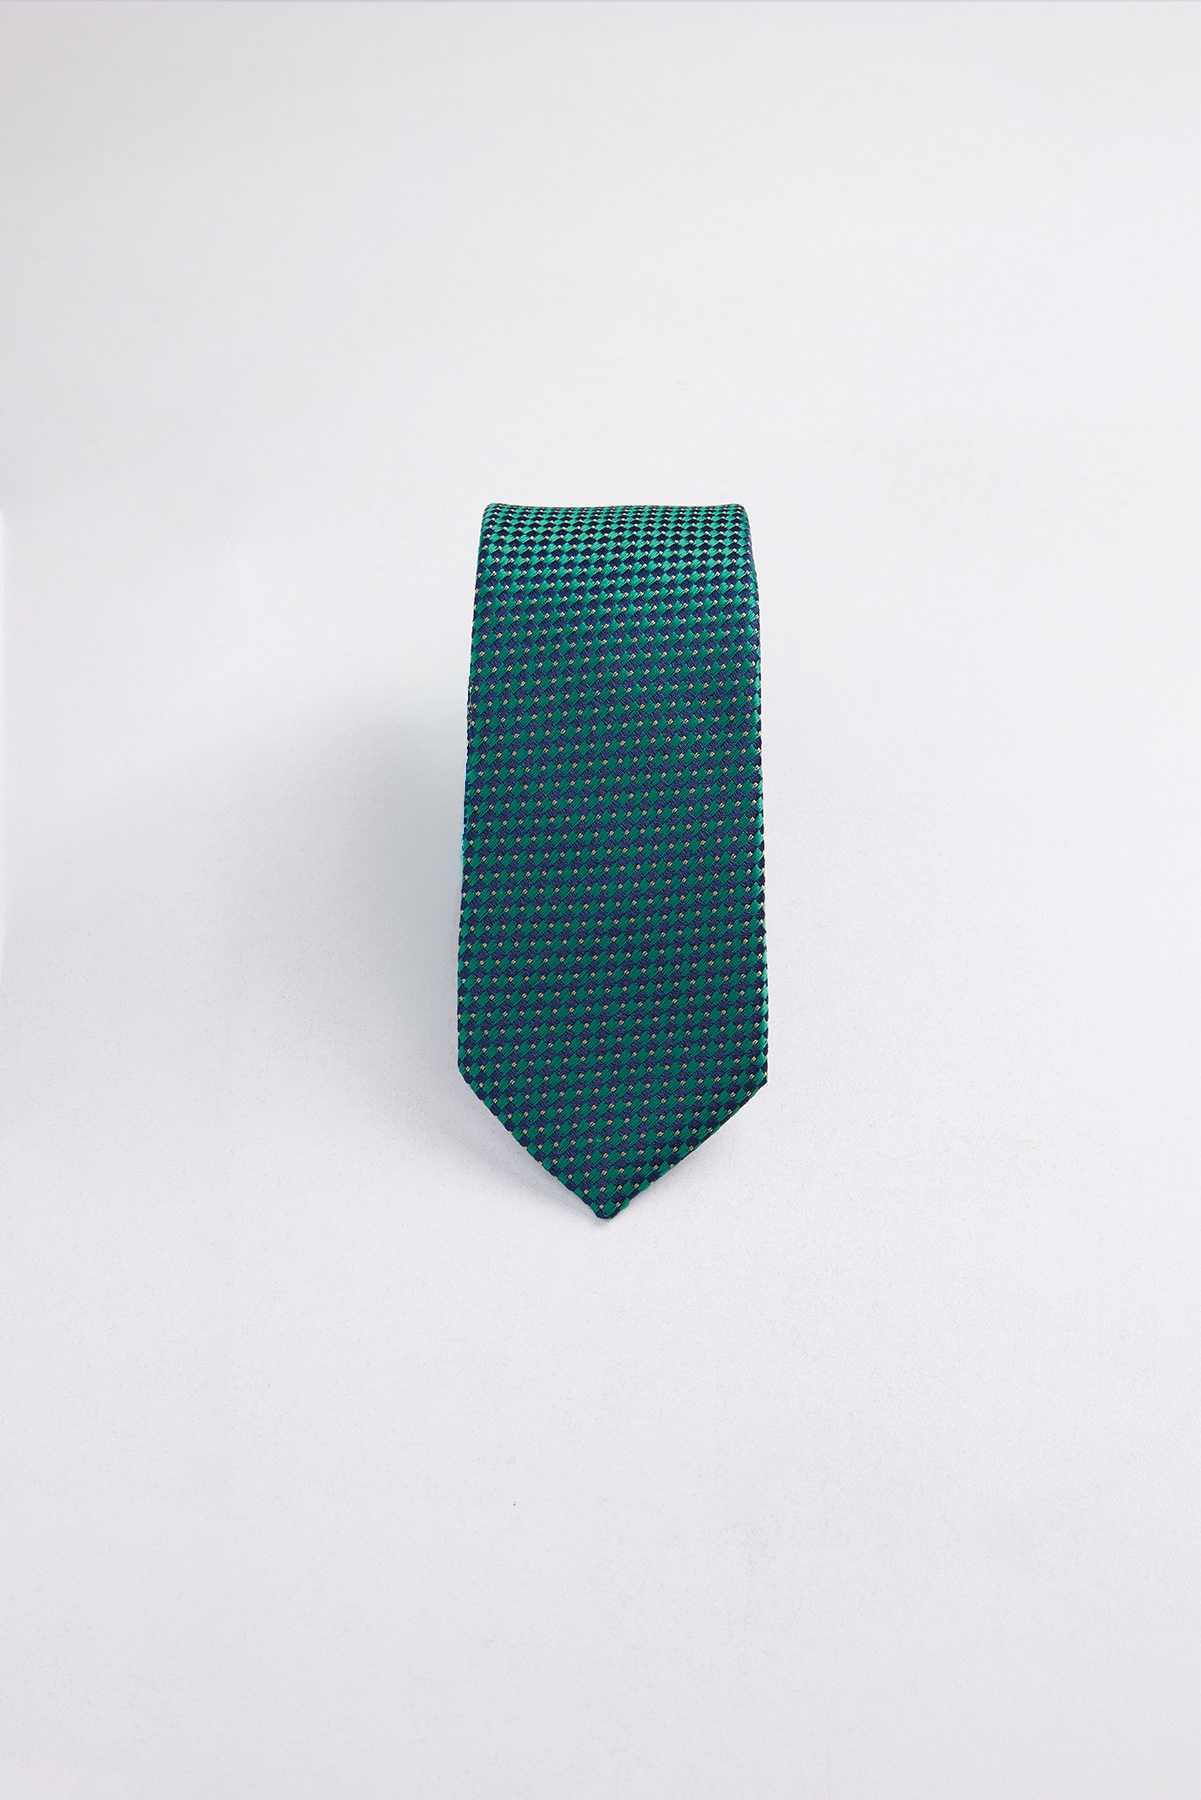  зеленый галстук